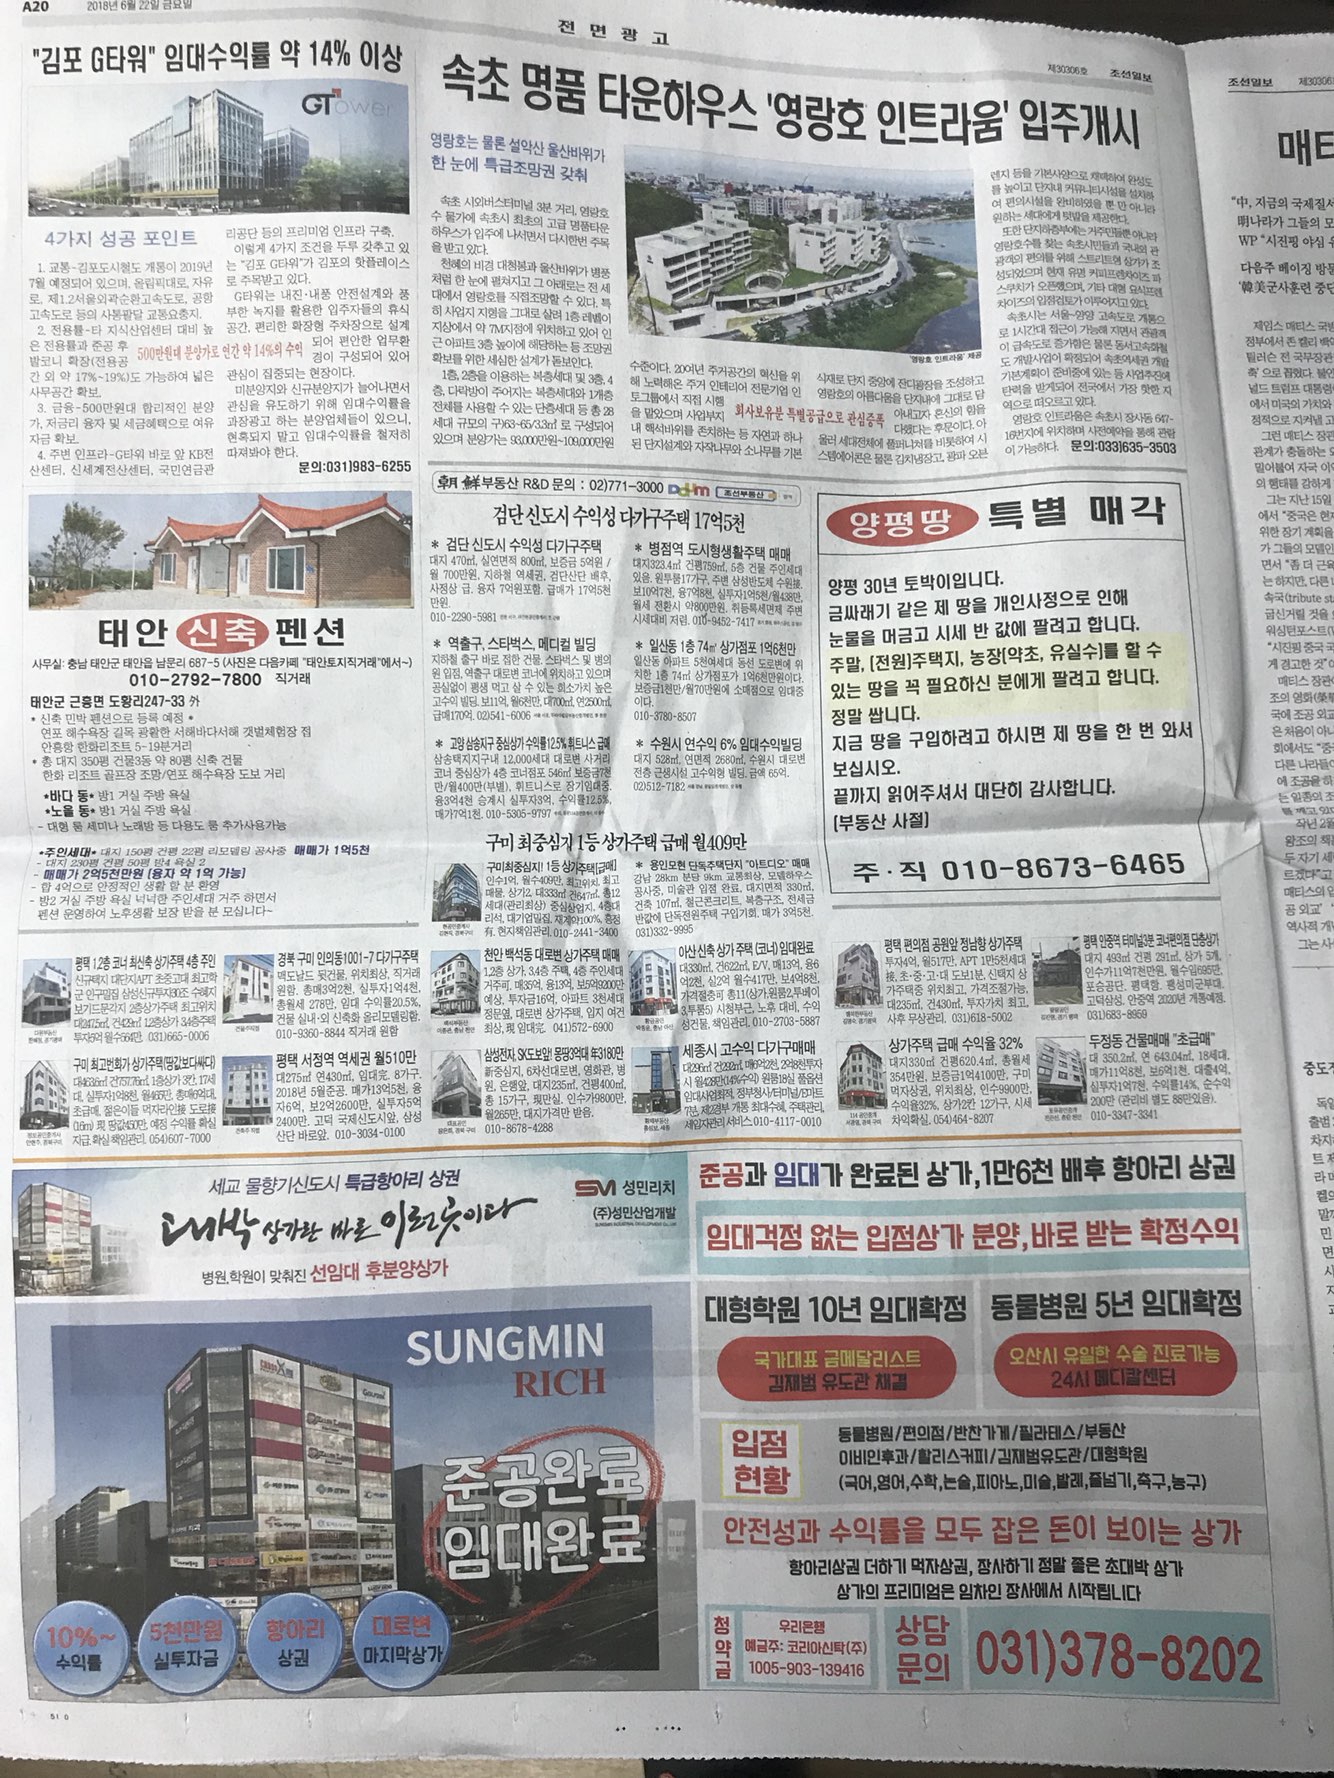 6월22일 조선일보 A20 기사식 매물광고.jpg